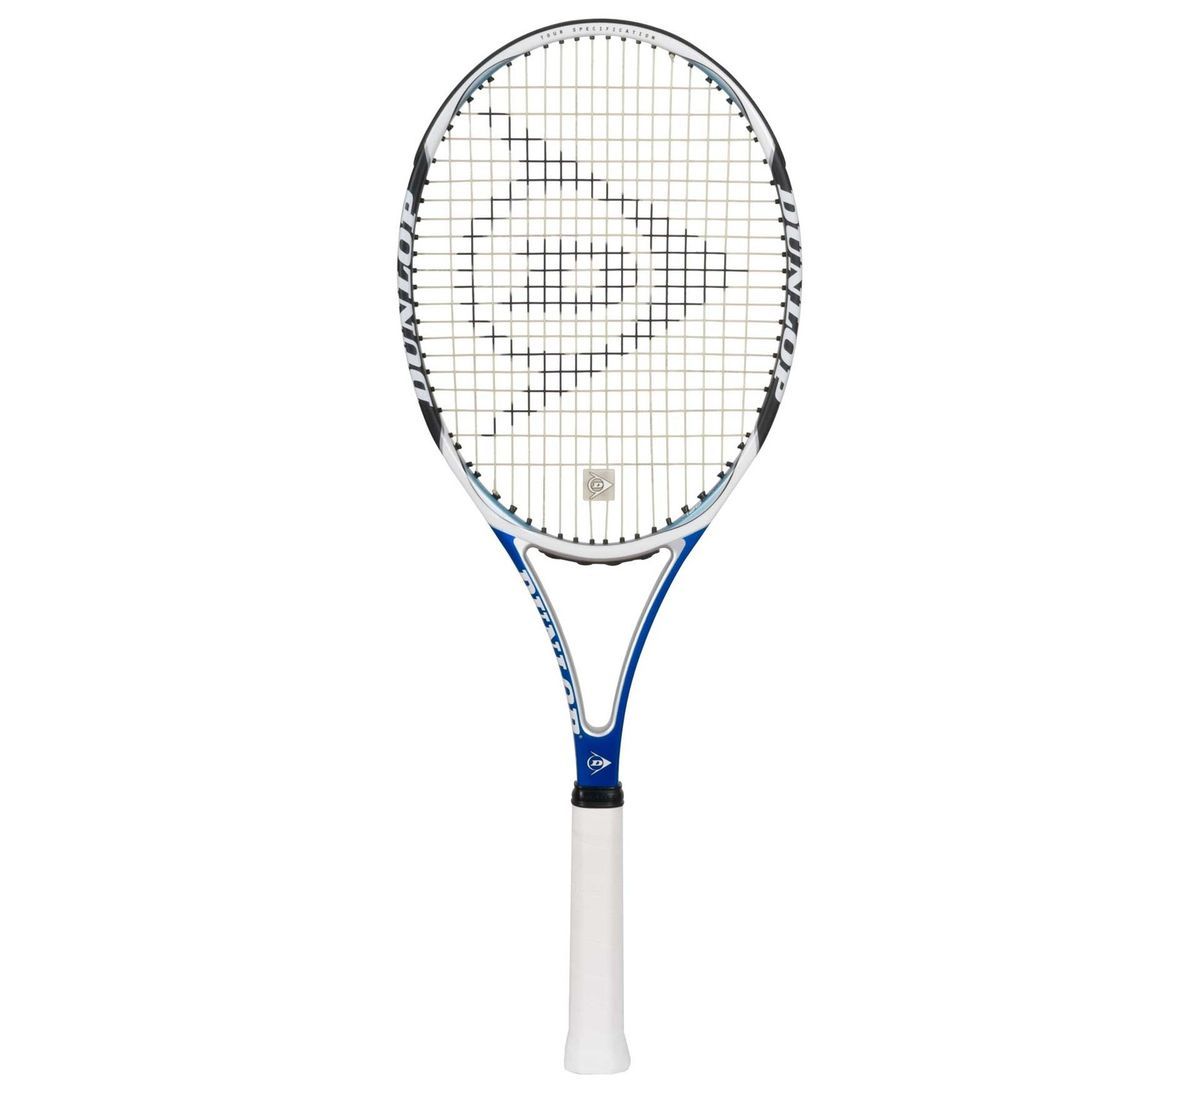 Dunlop Aerogel 200 Tennis Racquet 4 3 8 New